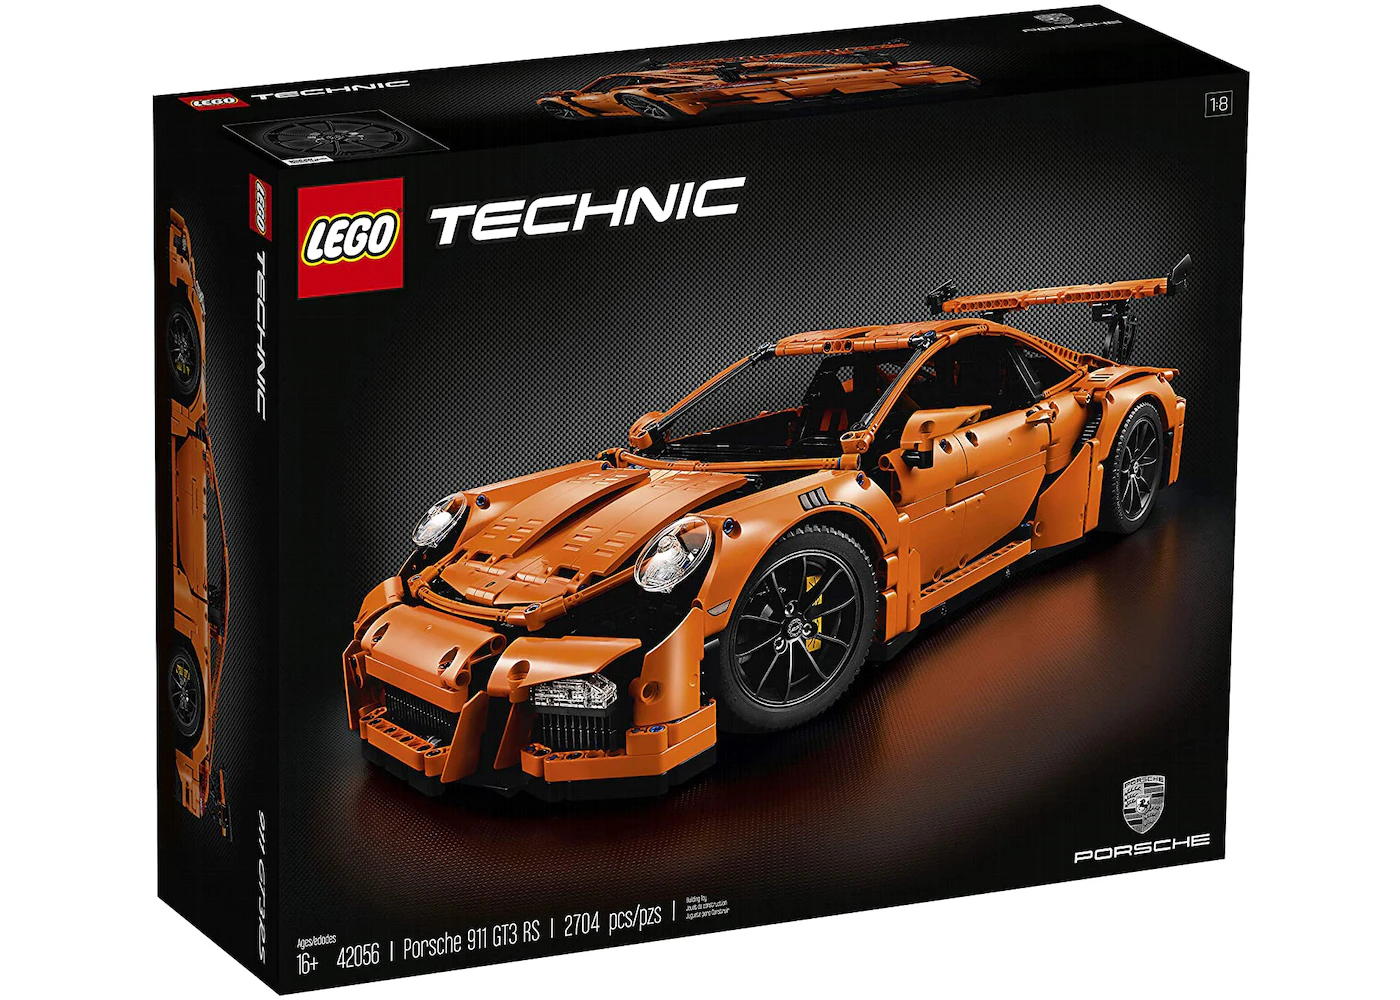 Technic Porsche 911 GT3 RS Set 42056 - US